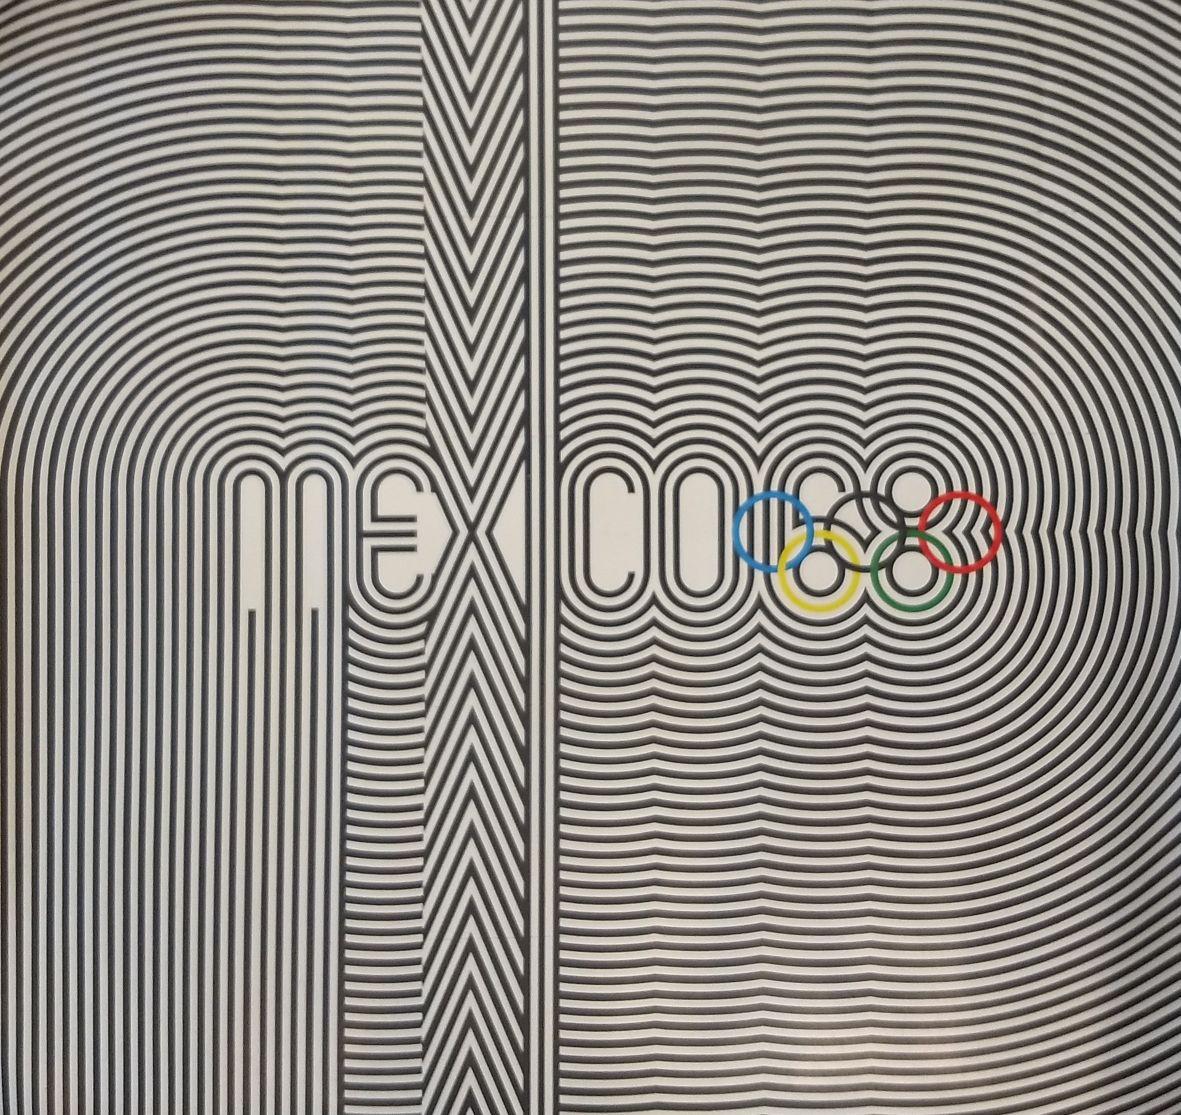 Original-Op-Art-Plakate, die für die Olympischen Spiele in Mexiko 68 gedruckt wurden. Das ikonische Design leitet sich von dem Logo ab, das sehr erfolgreich 